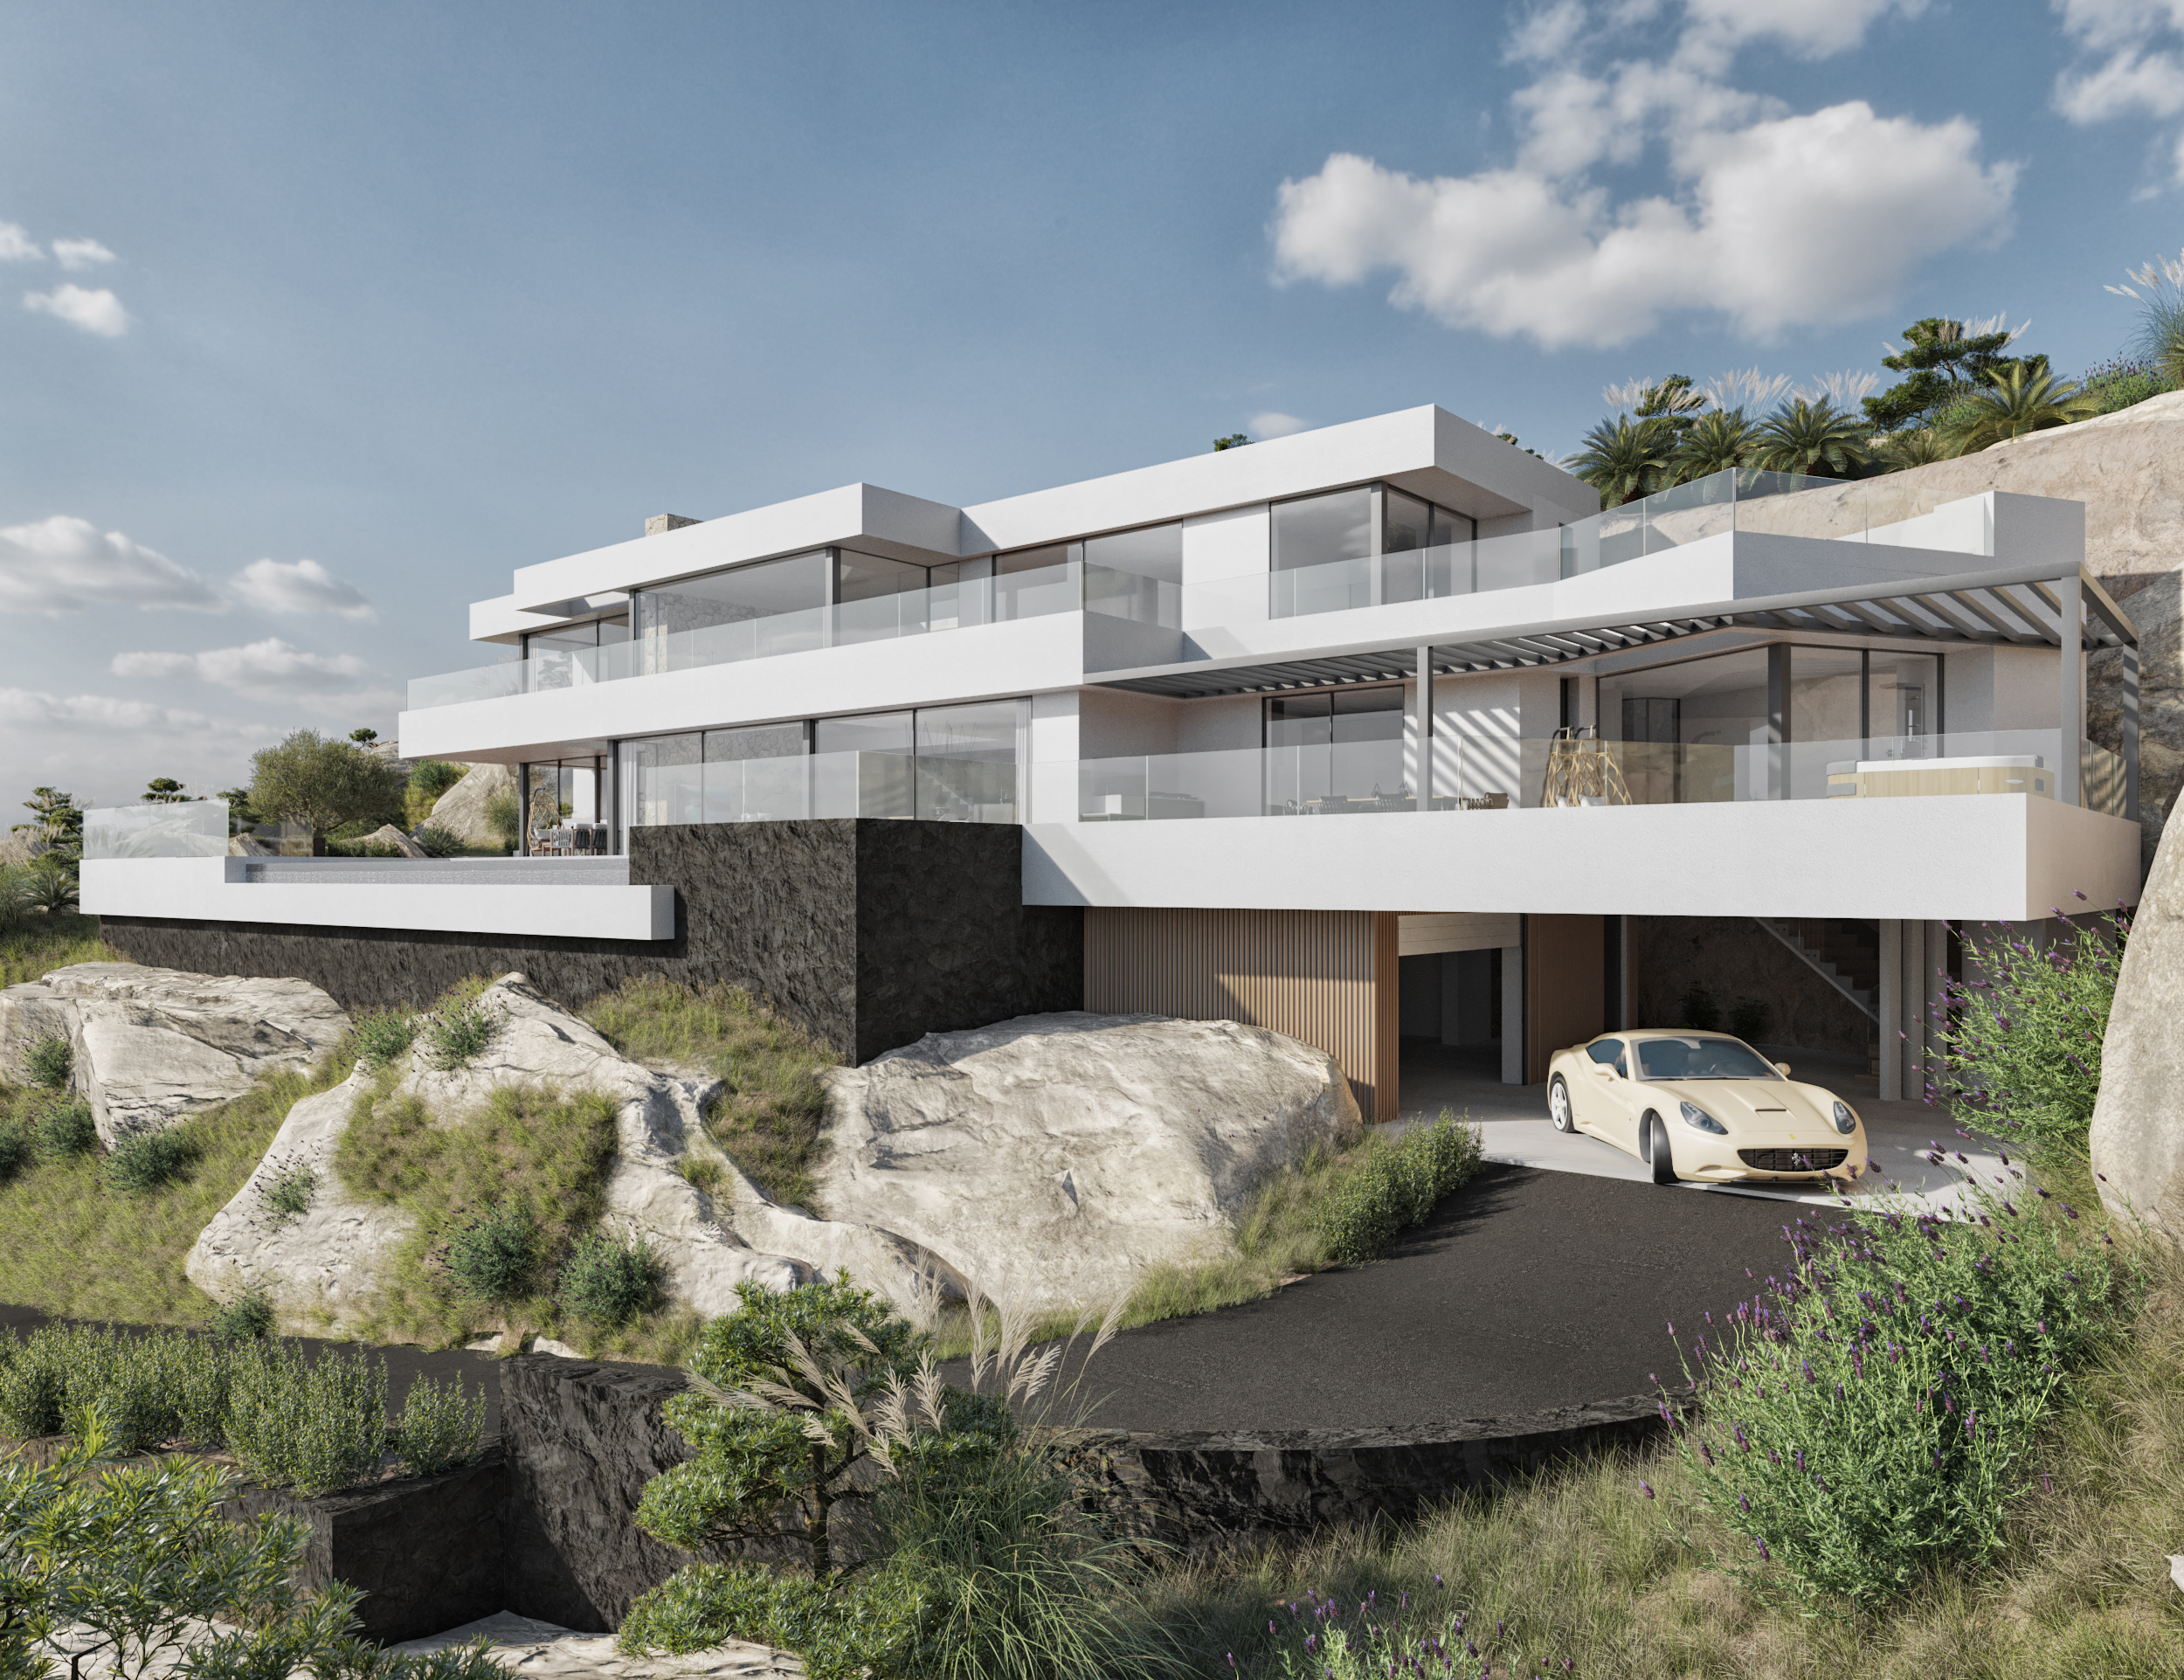 Storslått luksusvilla med design med fantastisk utsikt over havet